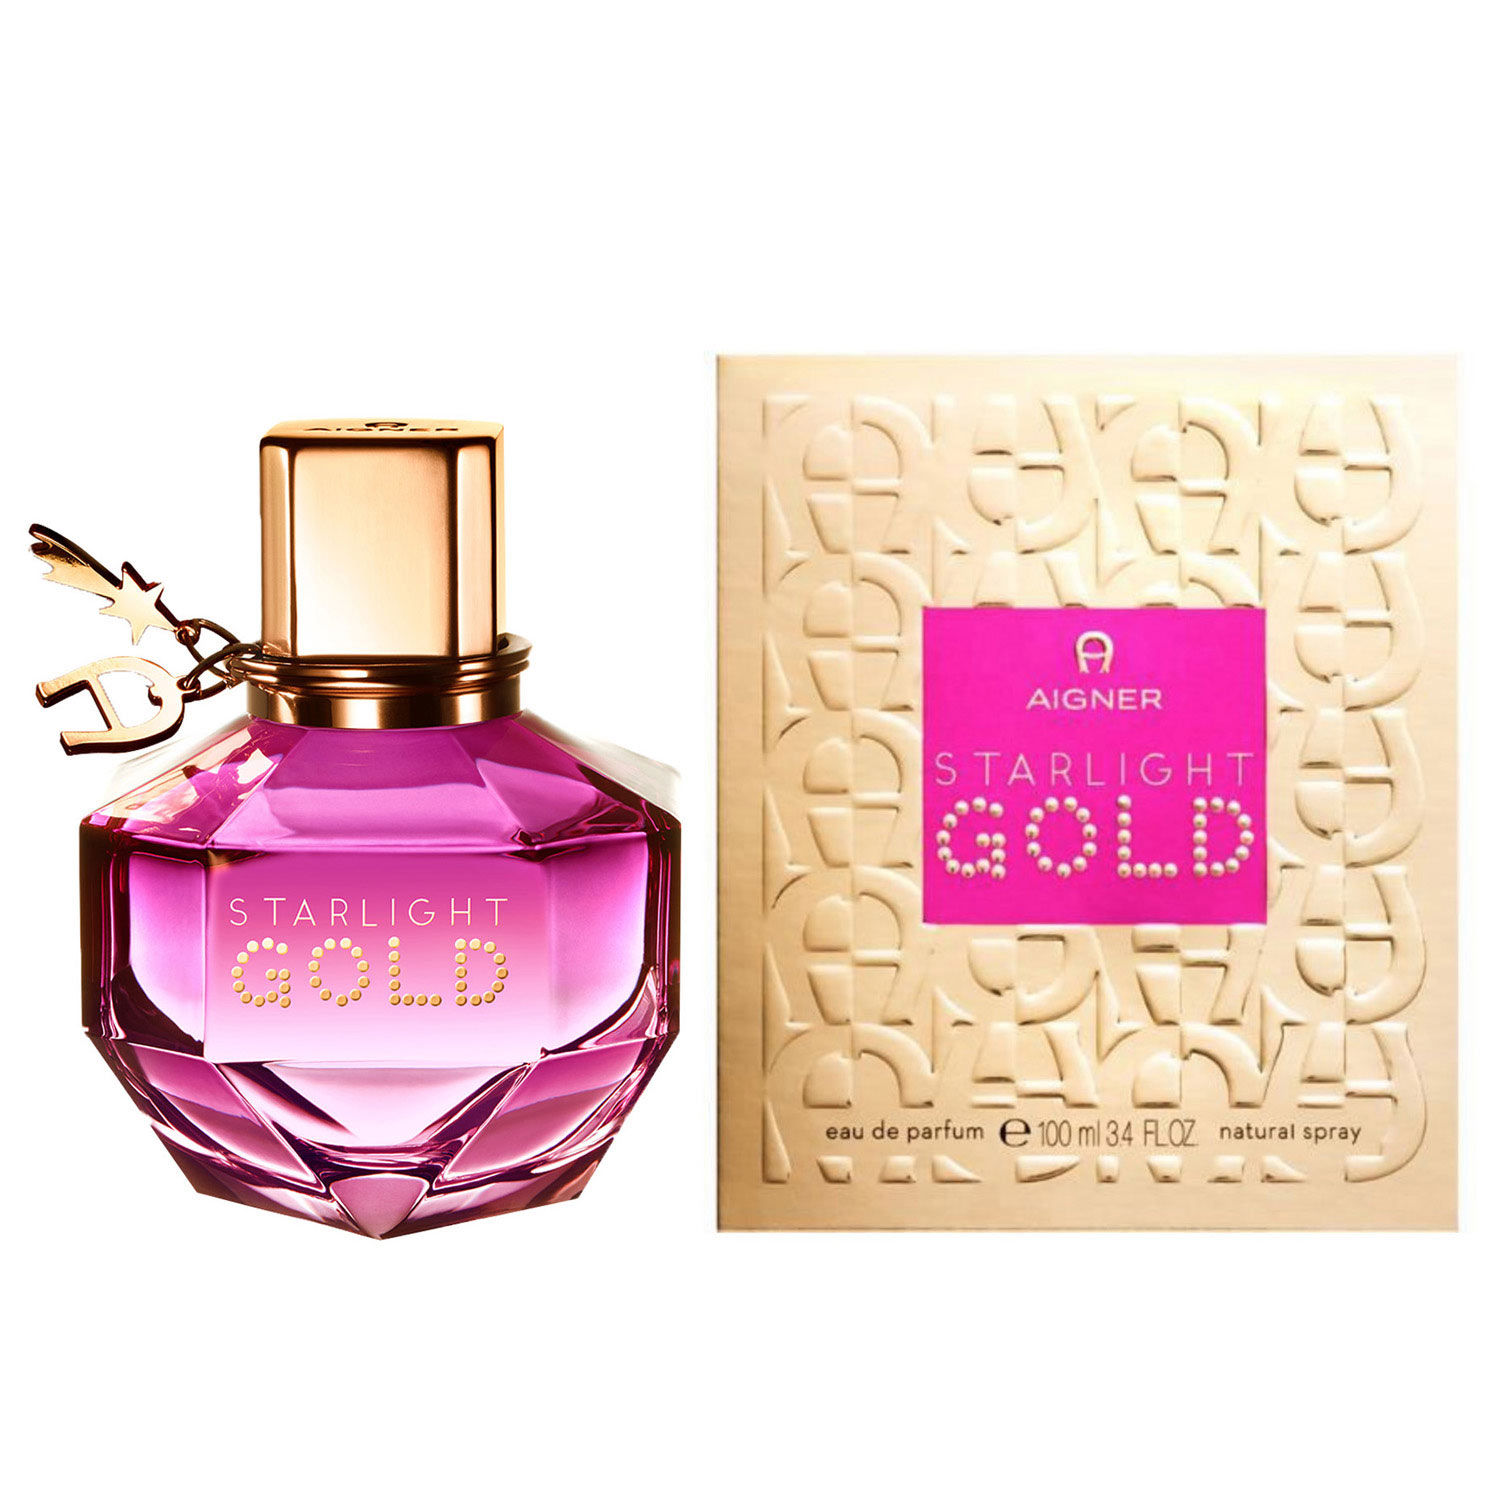 Buy/Send Aigner Starlight Gold Eau de Parfum Online- FNP